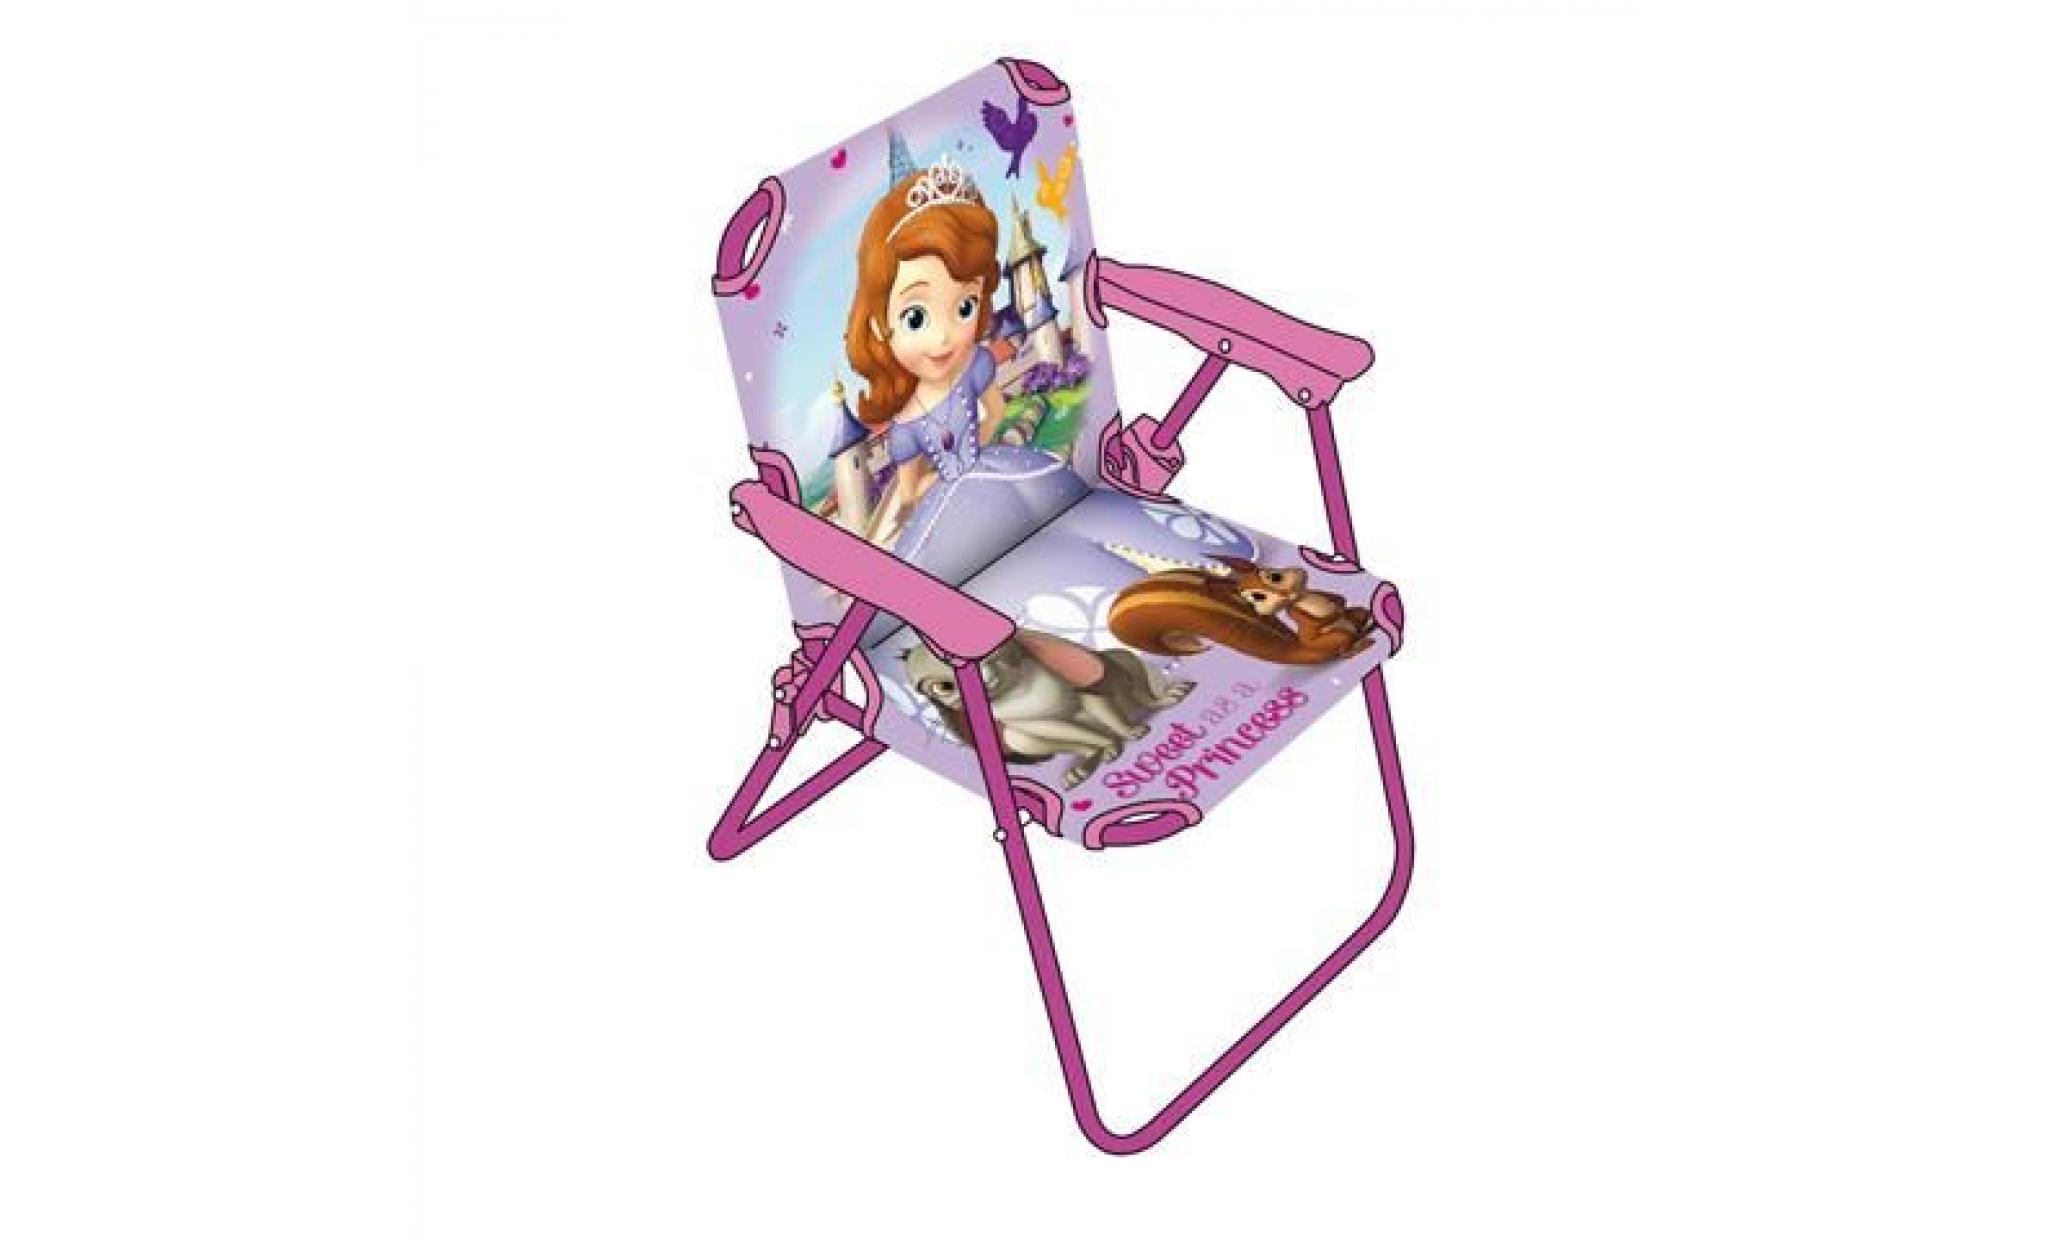 Chaise pliante pour enfant Princess avec sac